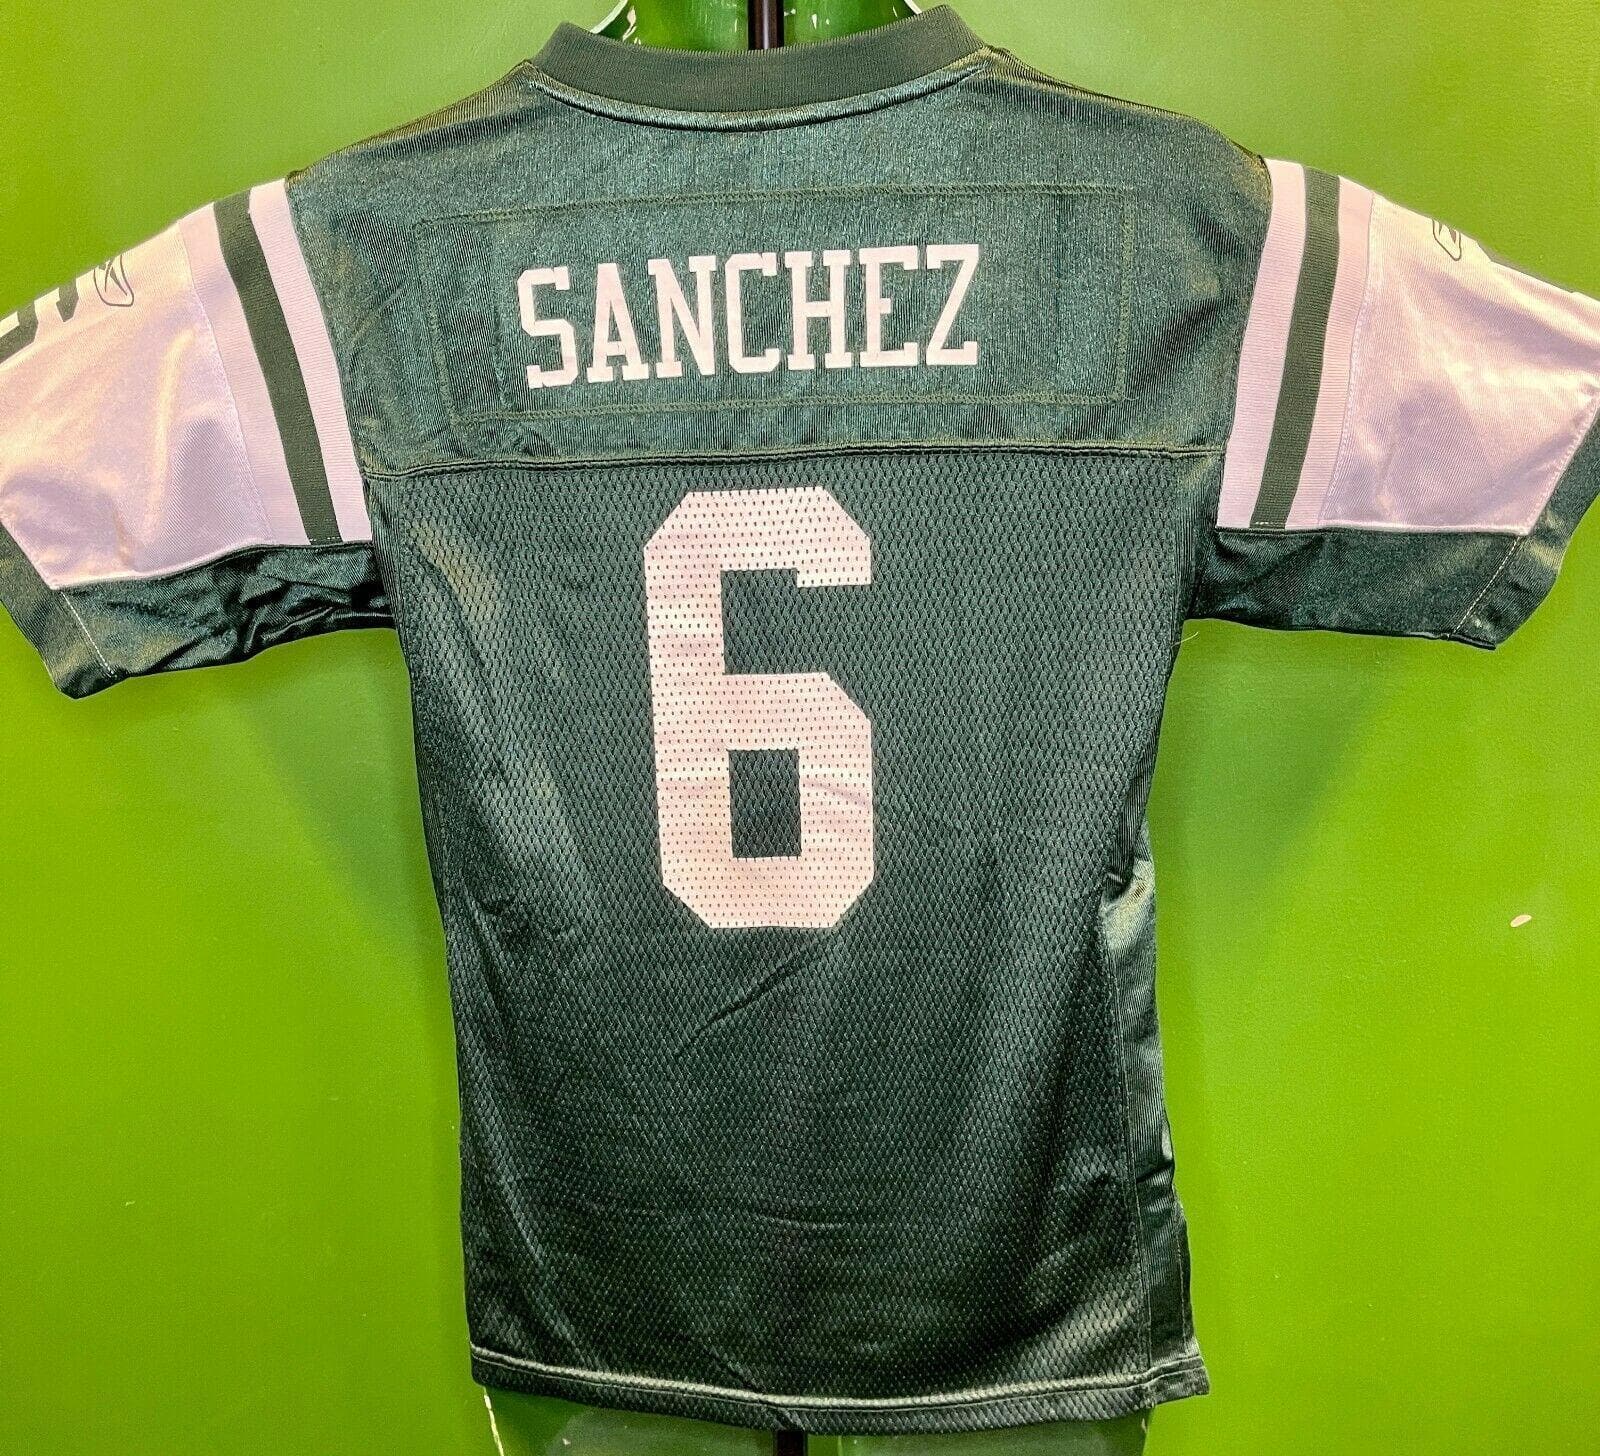 NFL New York Jets Mark Sanchez #6 Reebok Jersey Youth Large 14-16